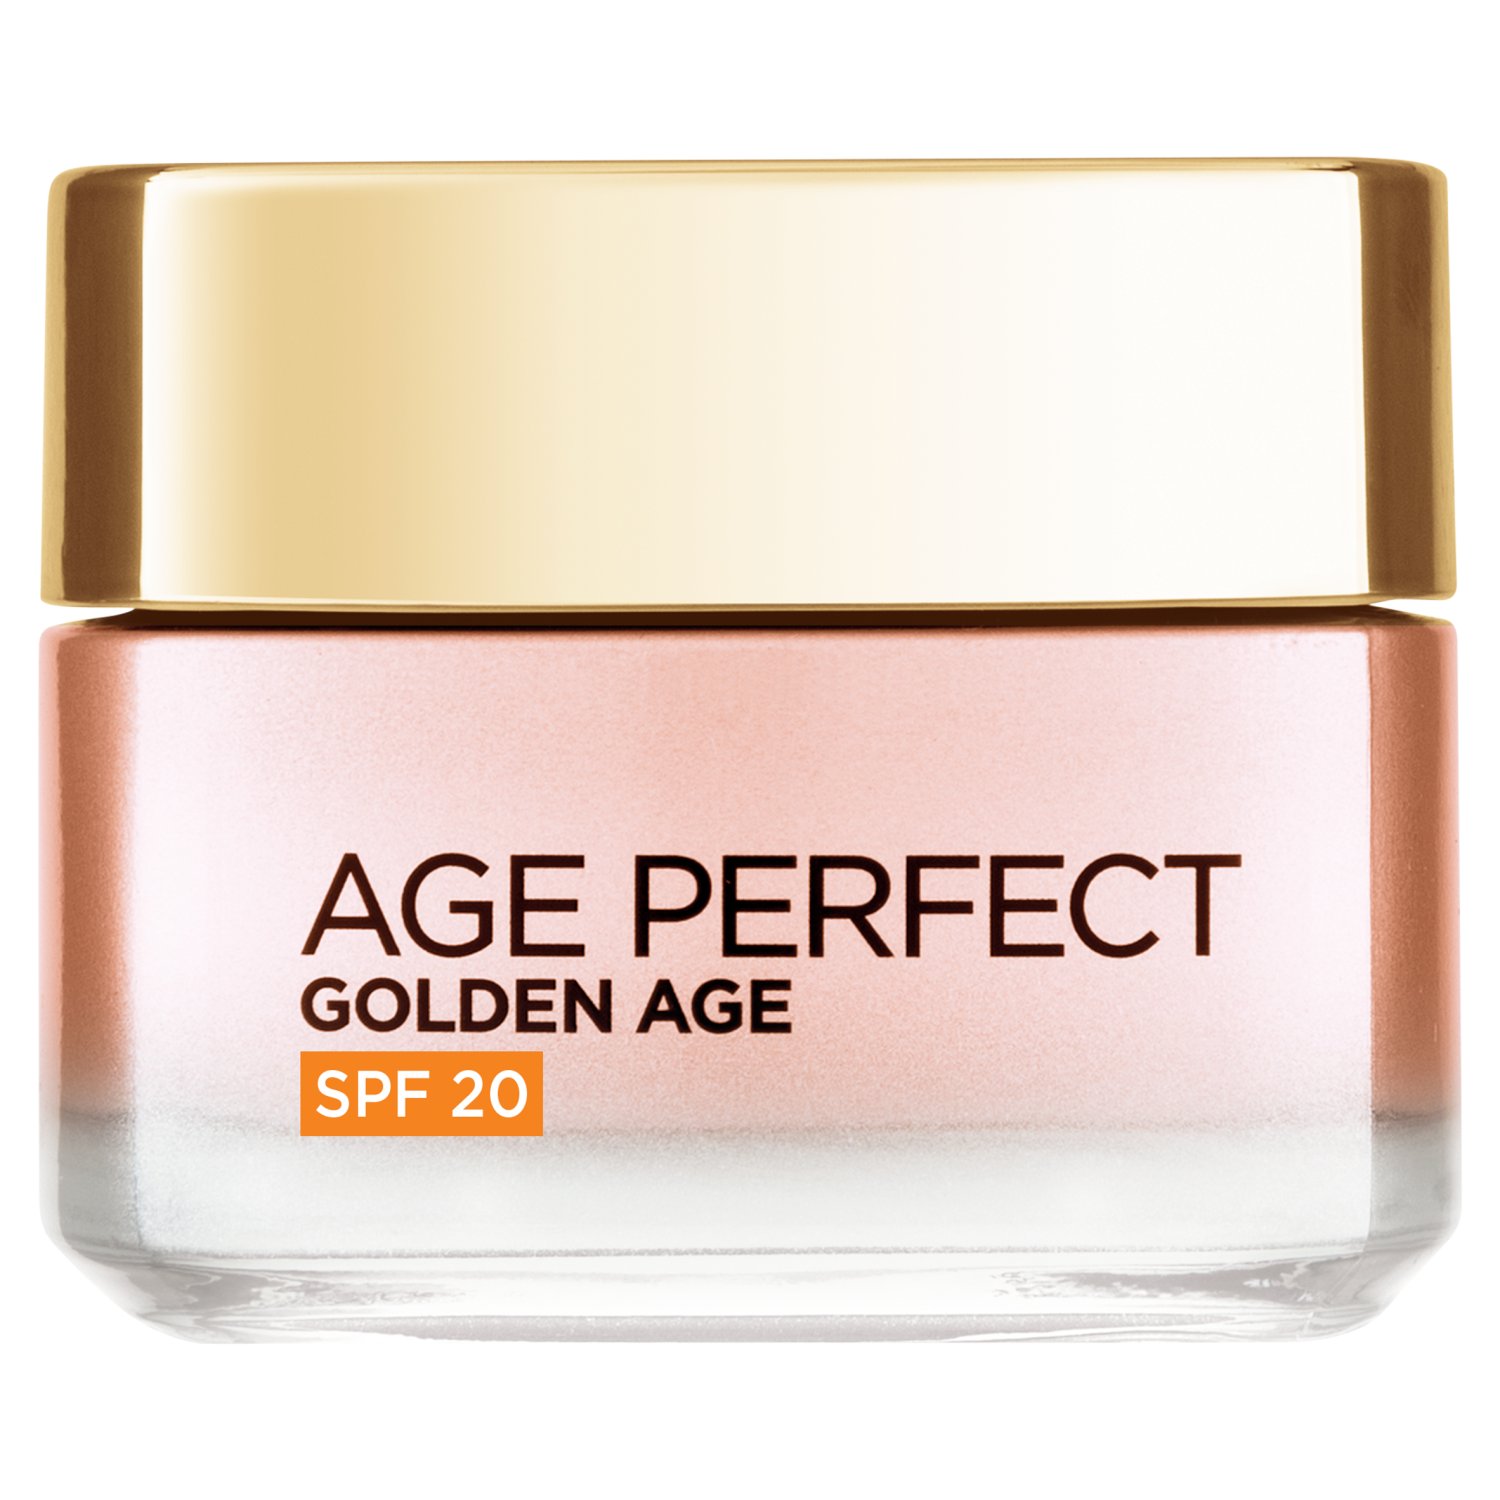 L'Oreal Age Perfect Golden Age Rosy Day Cream SPF20 (50 g)